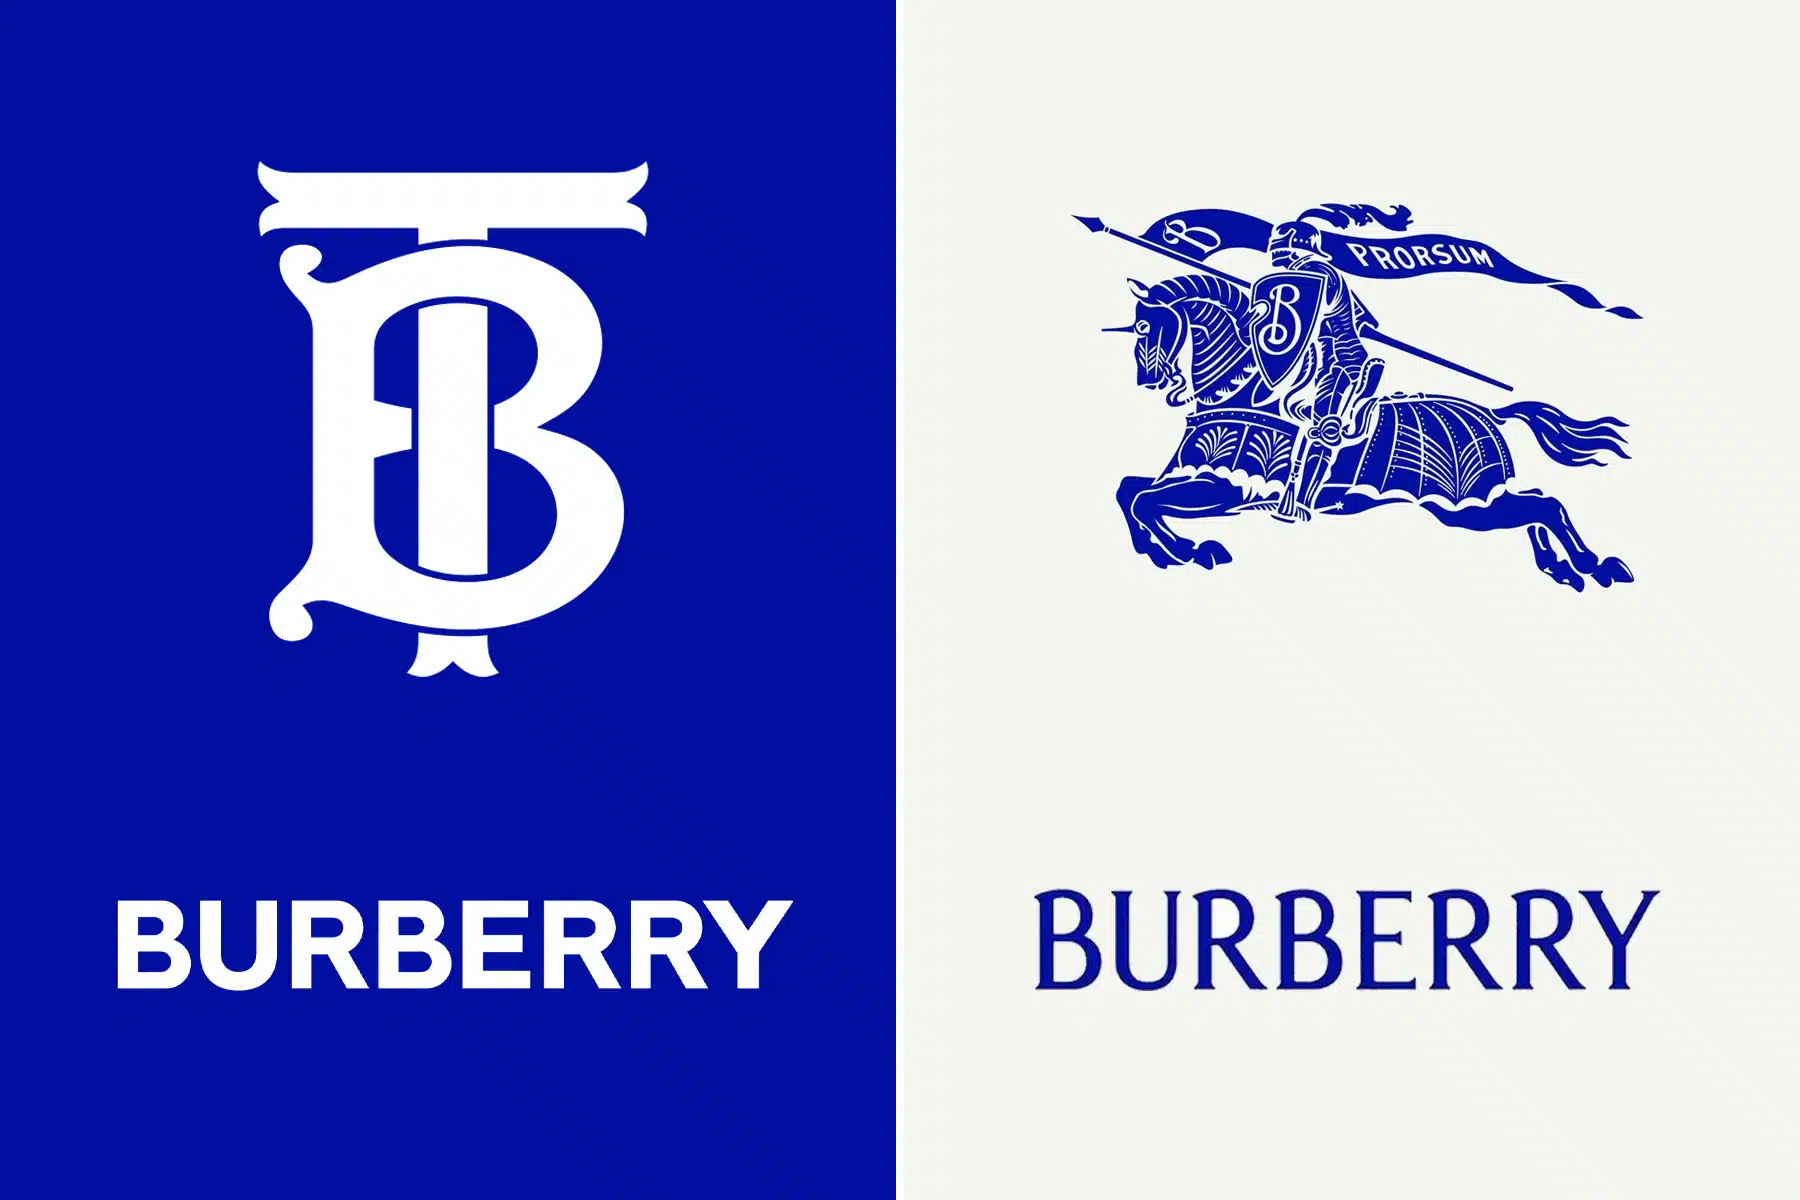 Logo Burberry